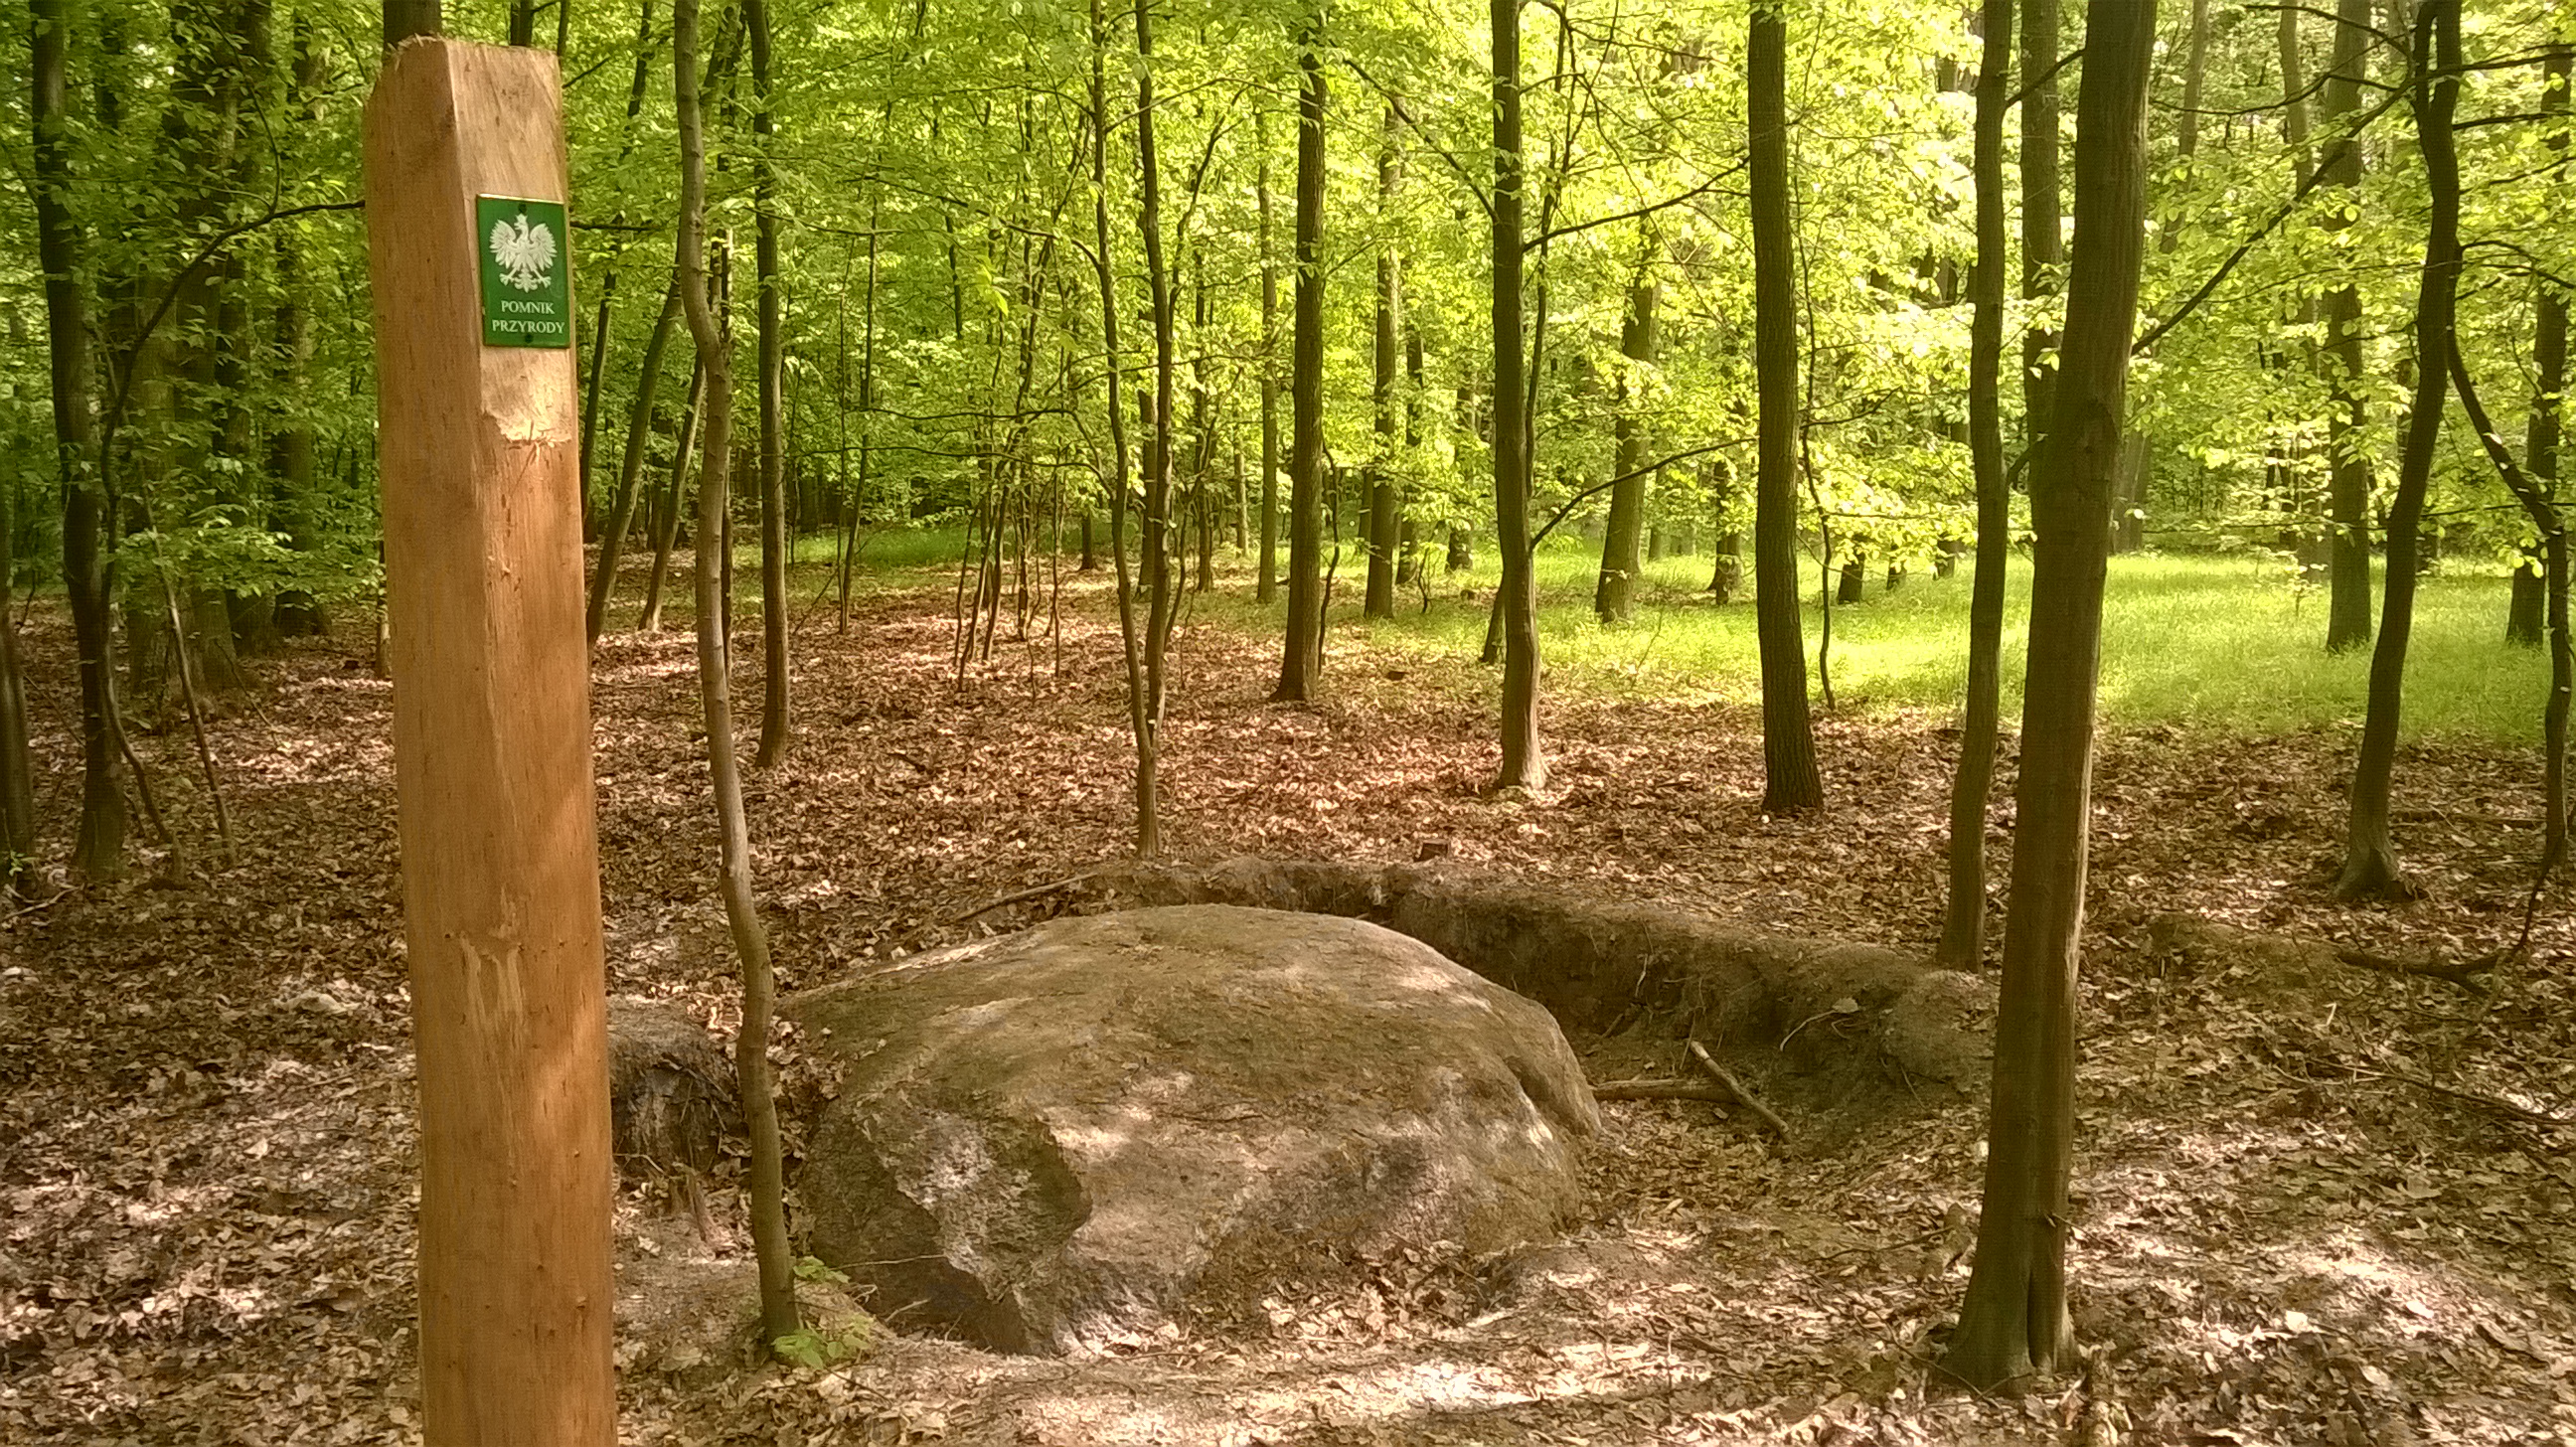 Zdjęcie przedstawia pomnik przyrody nieożywionej - głaz narzutowy zlokalizowany przy jeziorze Łomno w leśnictwie Brzeźno. Fot. Robert Zaganiaczyk, leśniczy leśnictwa Brzeźno. 